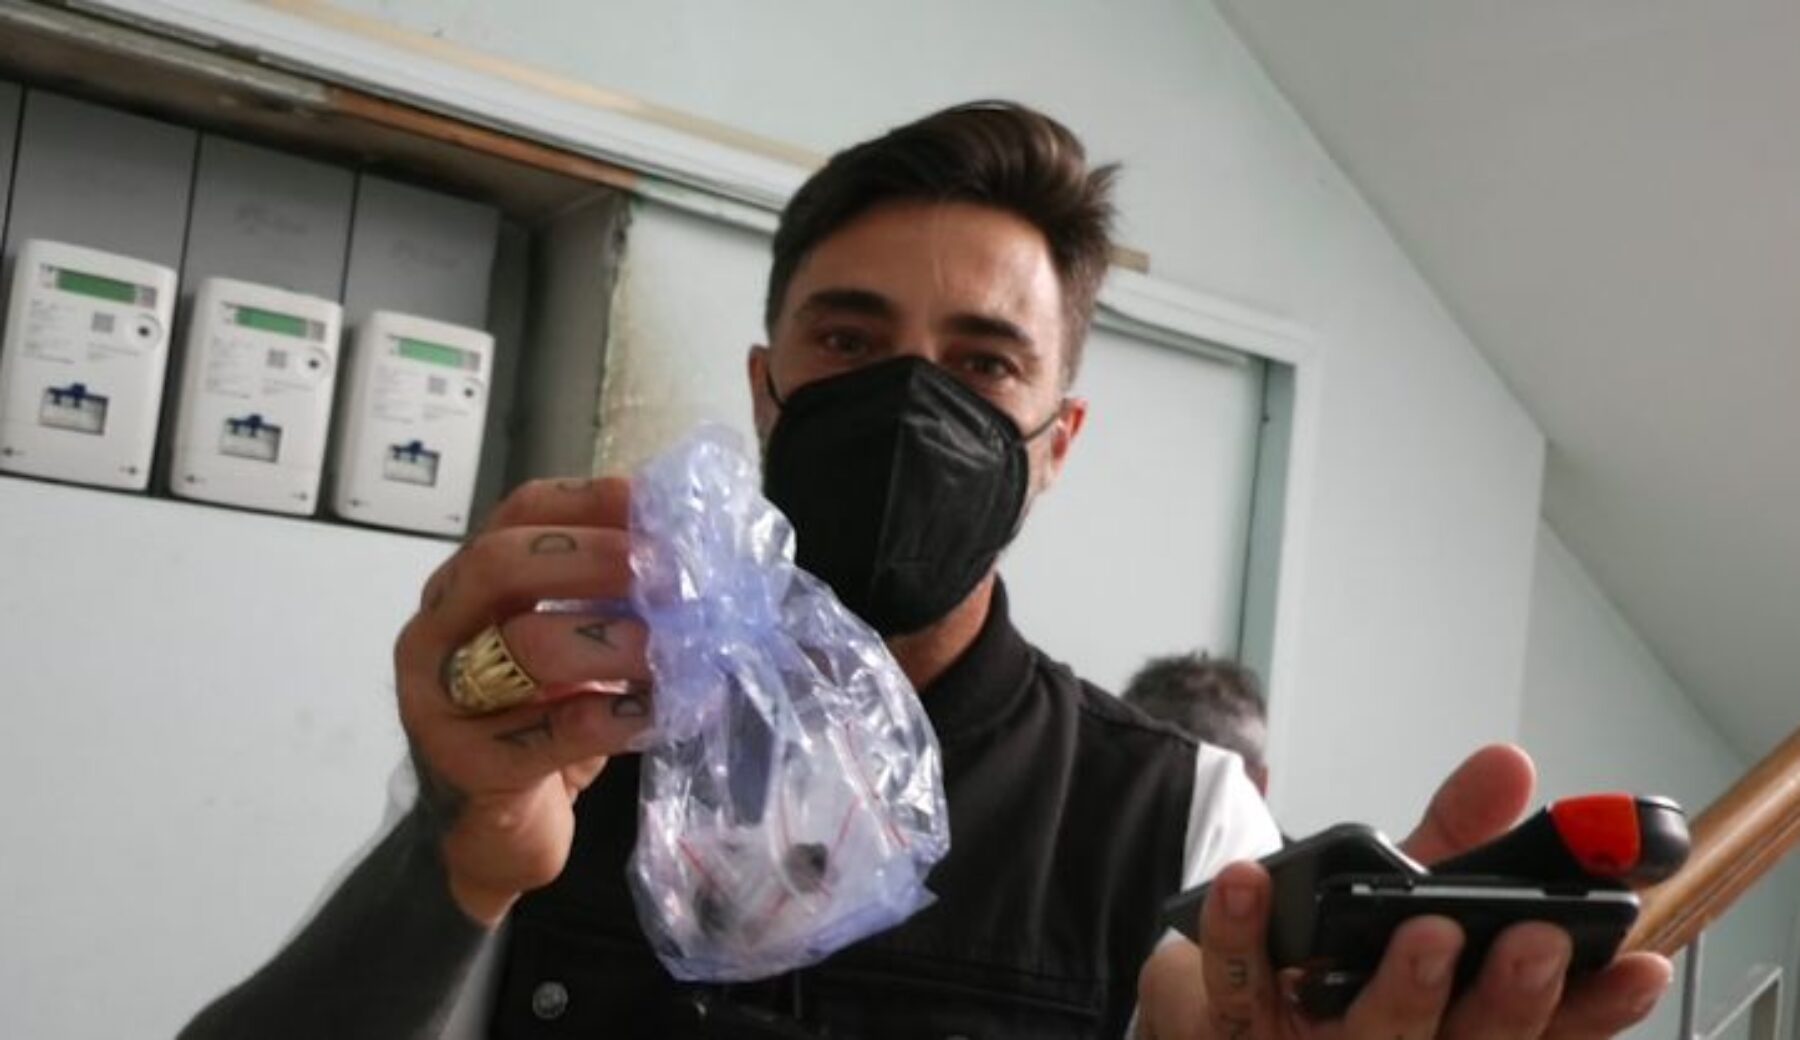 Brumotti di nuovo in sella contro la droga: minacce e insulti a Guidonia